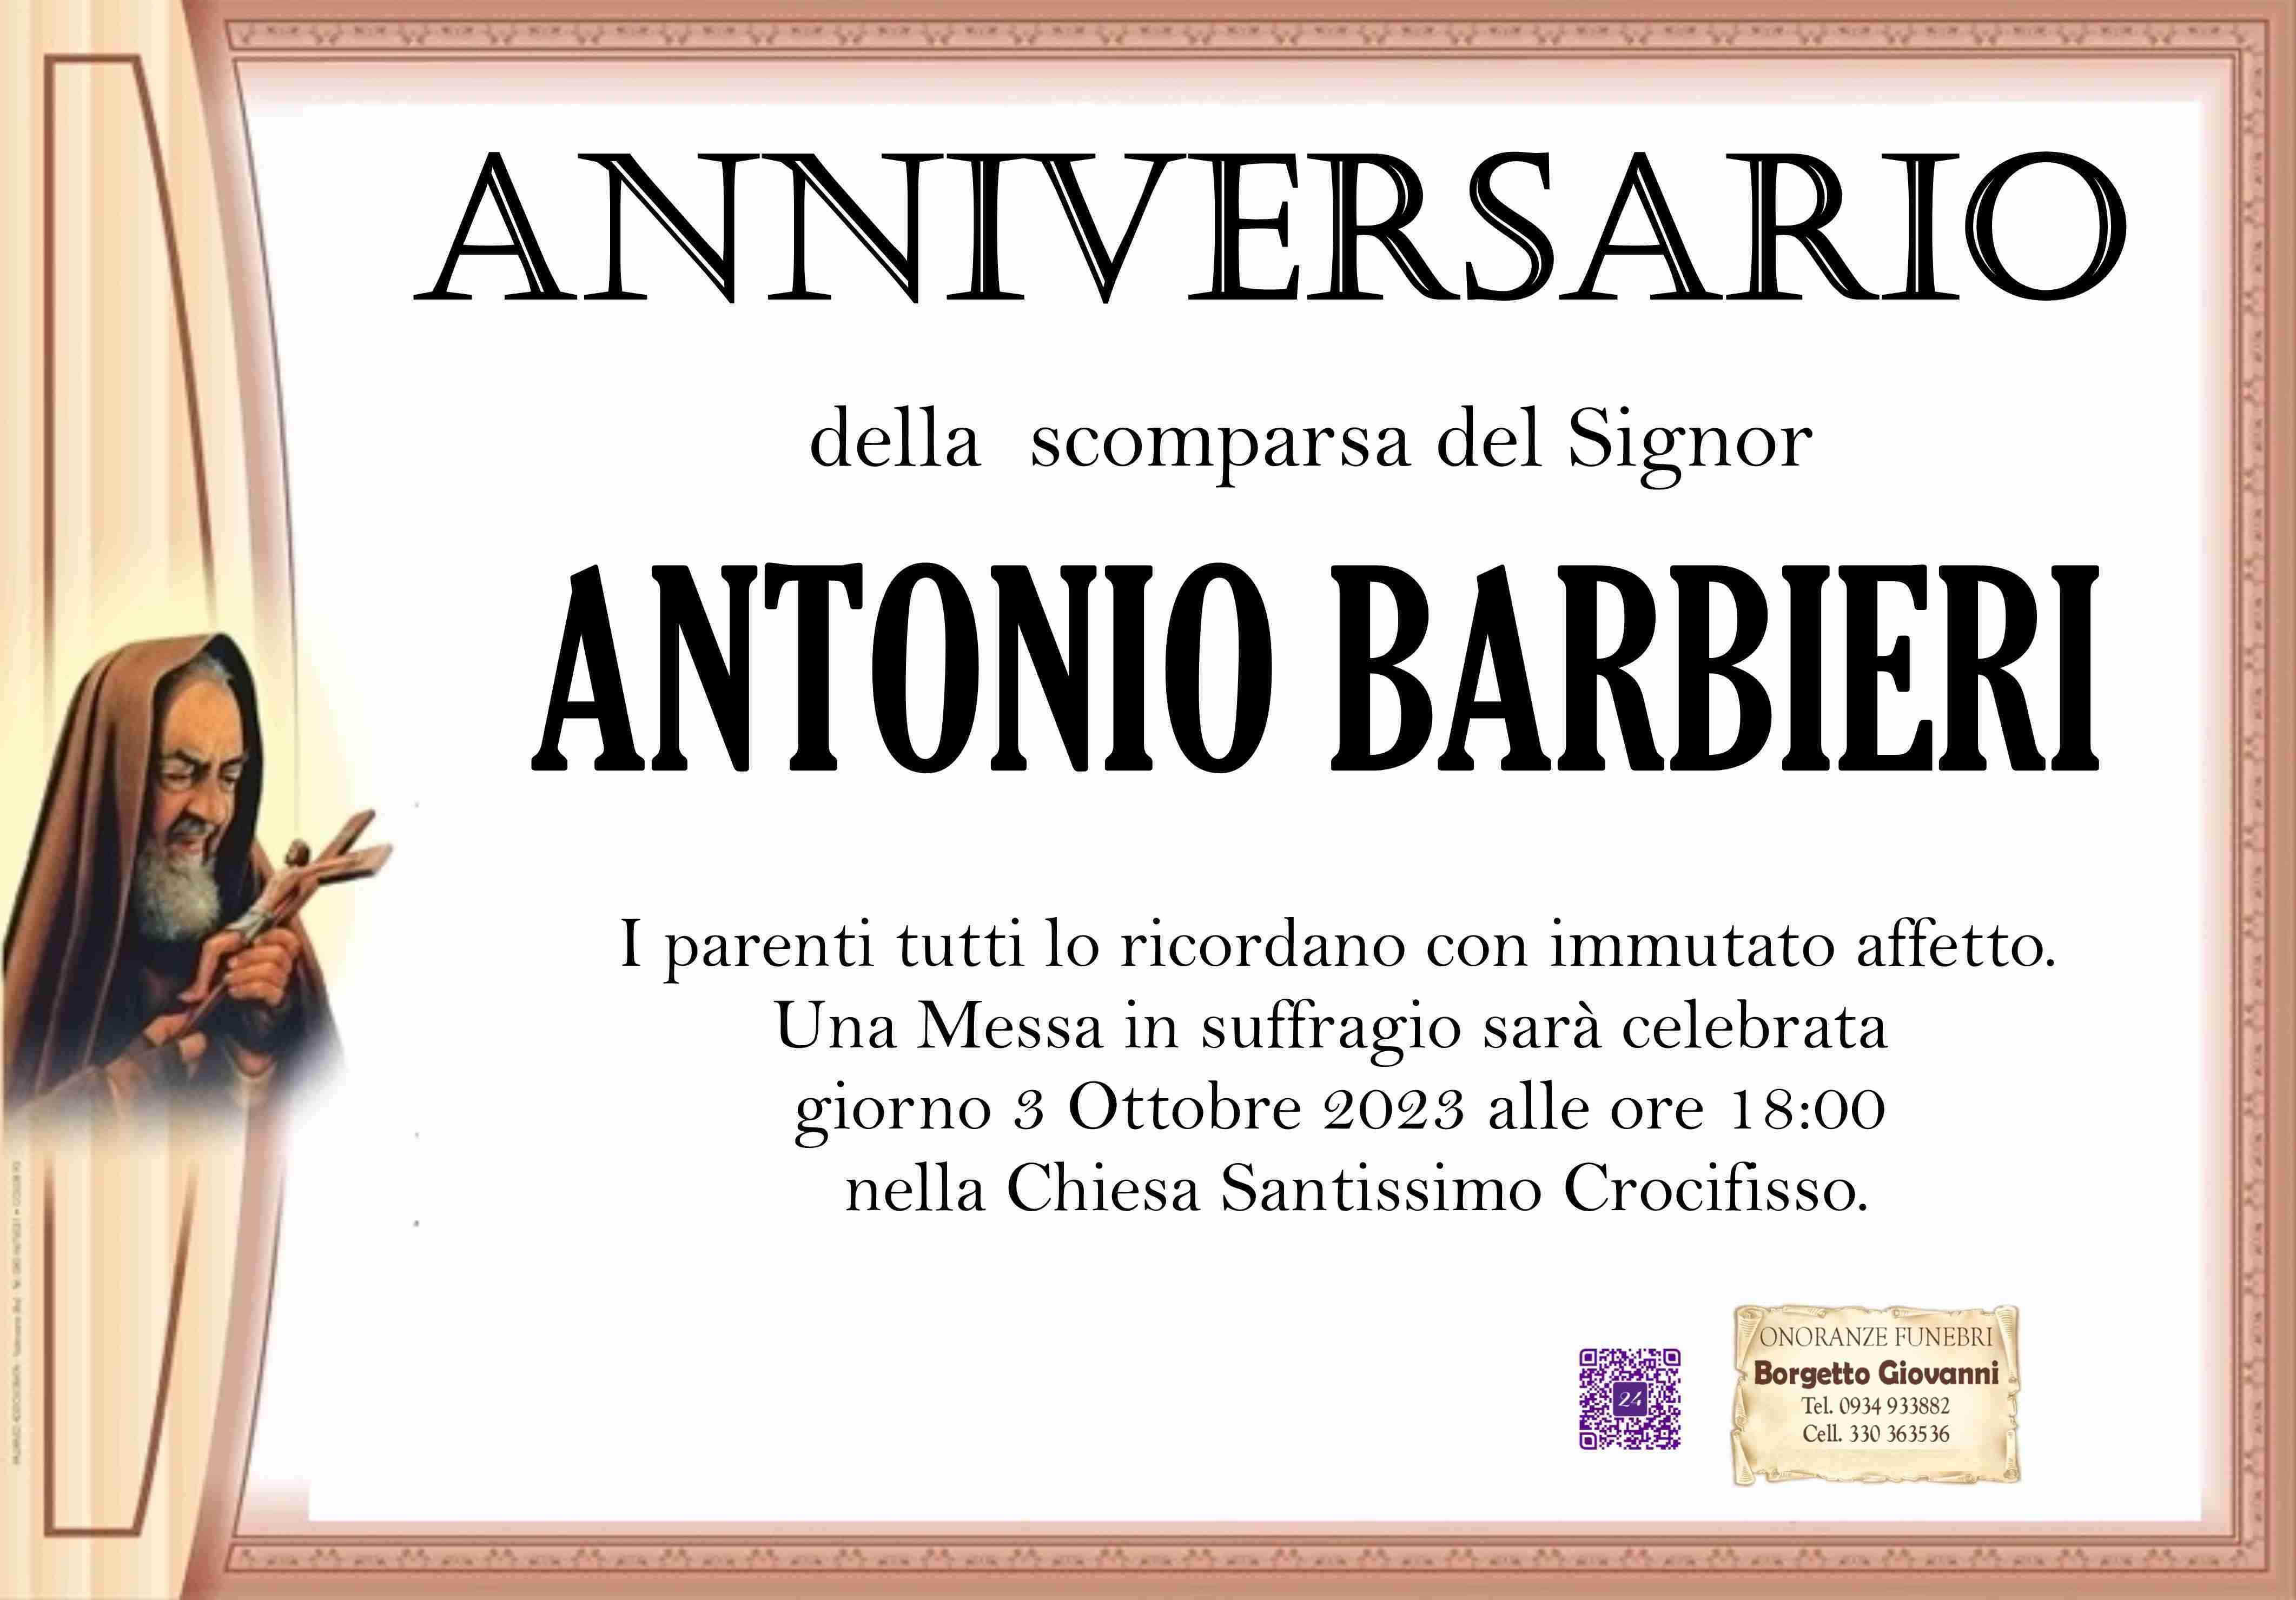 Antonio Barbieri